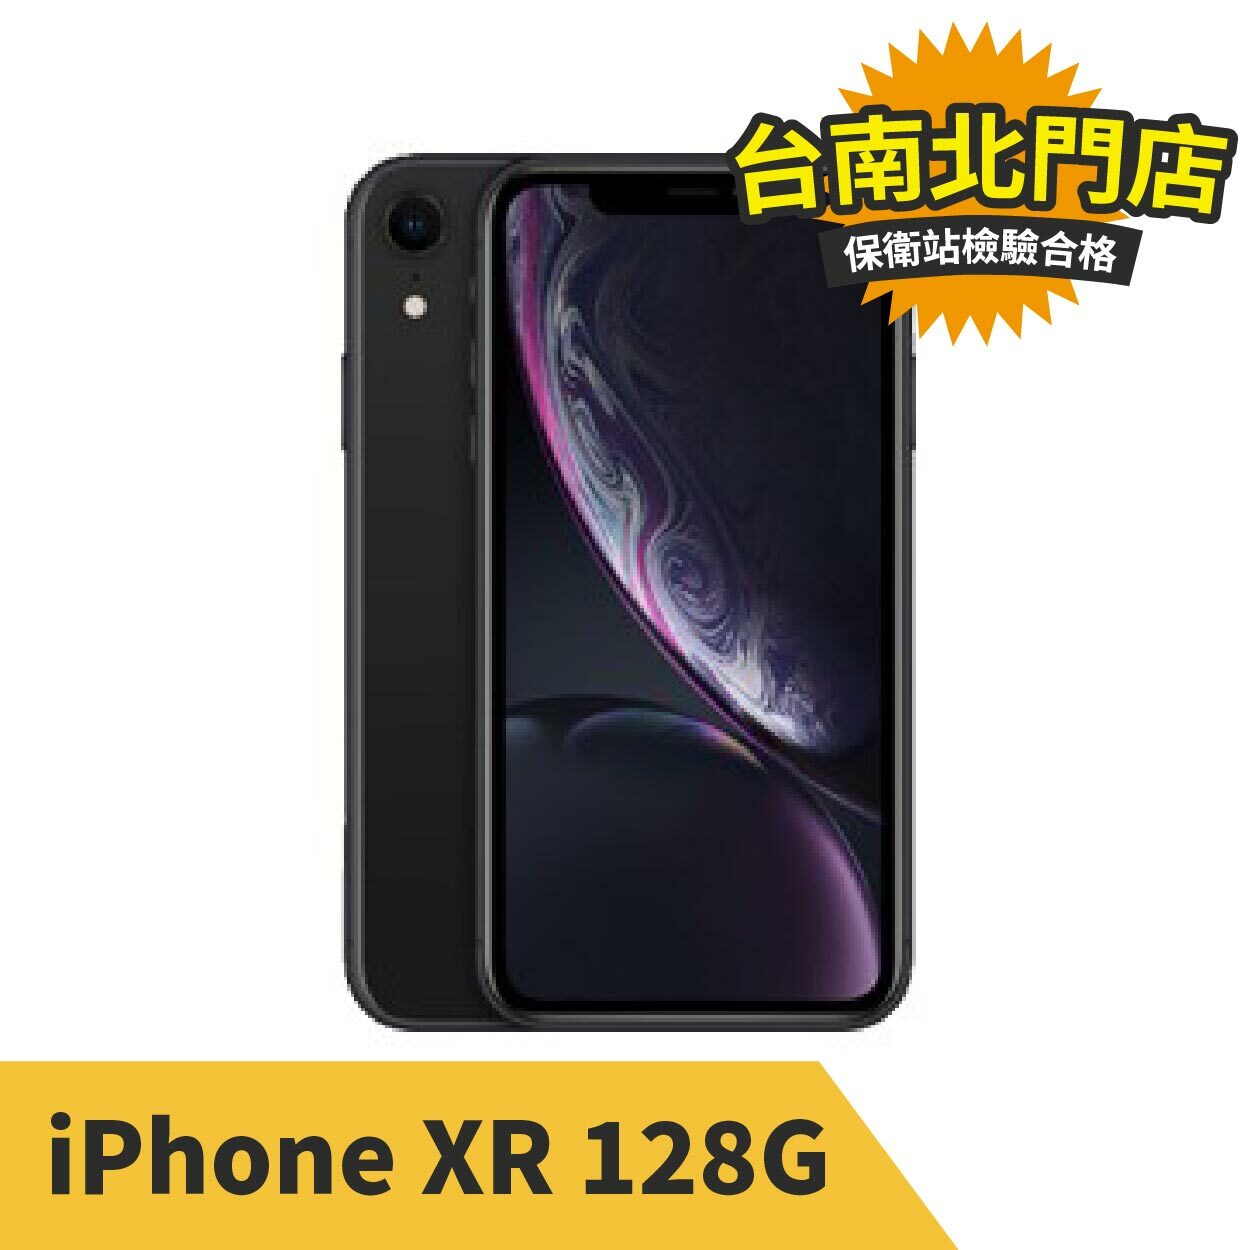 iPhone XR 128G 黑色